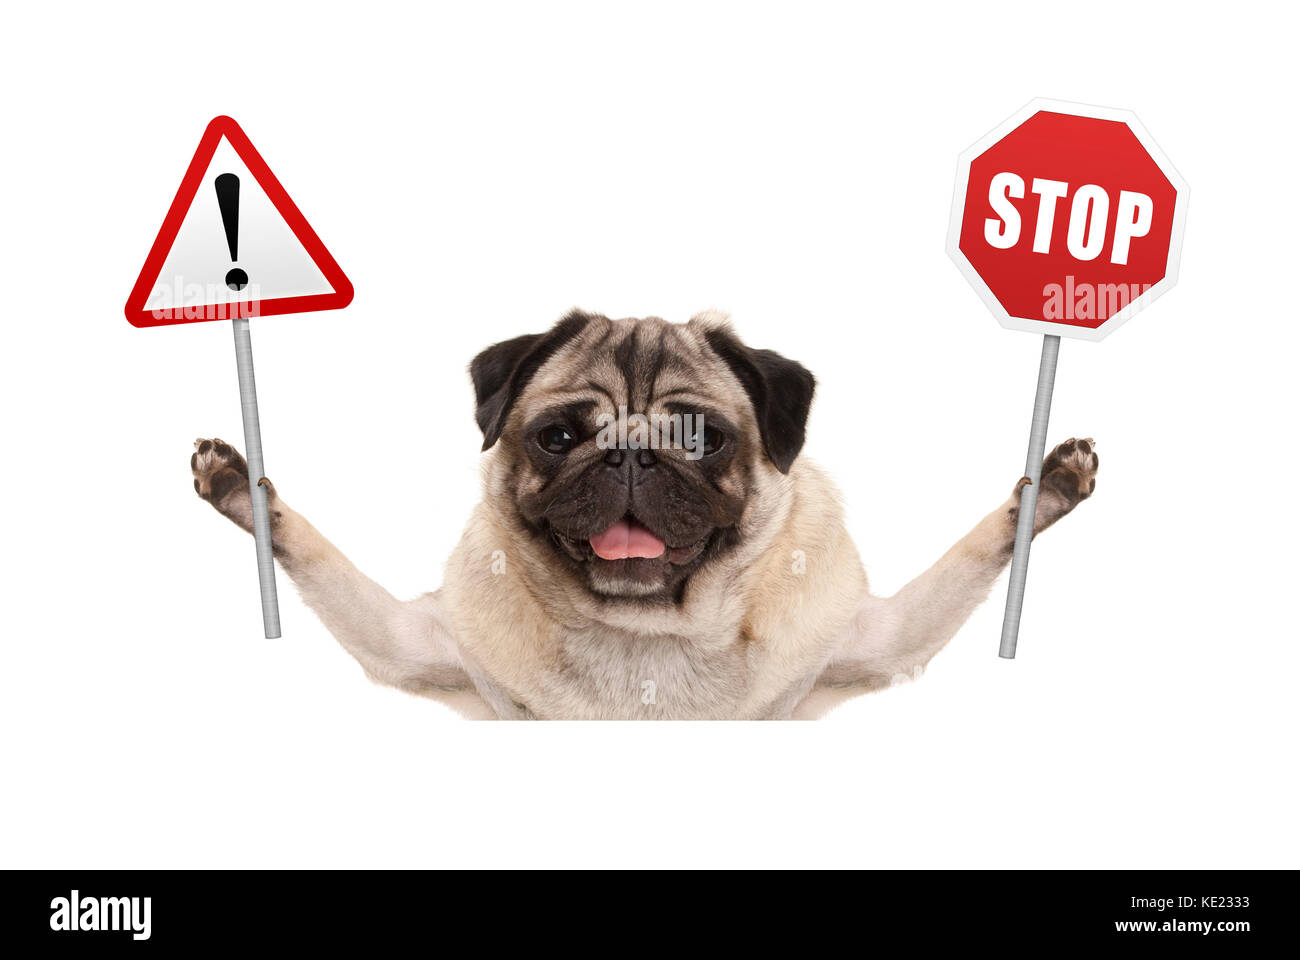 Pug dog smiling holding up et d'arrêt rouge signe d'exclamation isolé sur fond blanc Banque D'Images